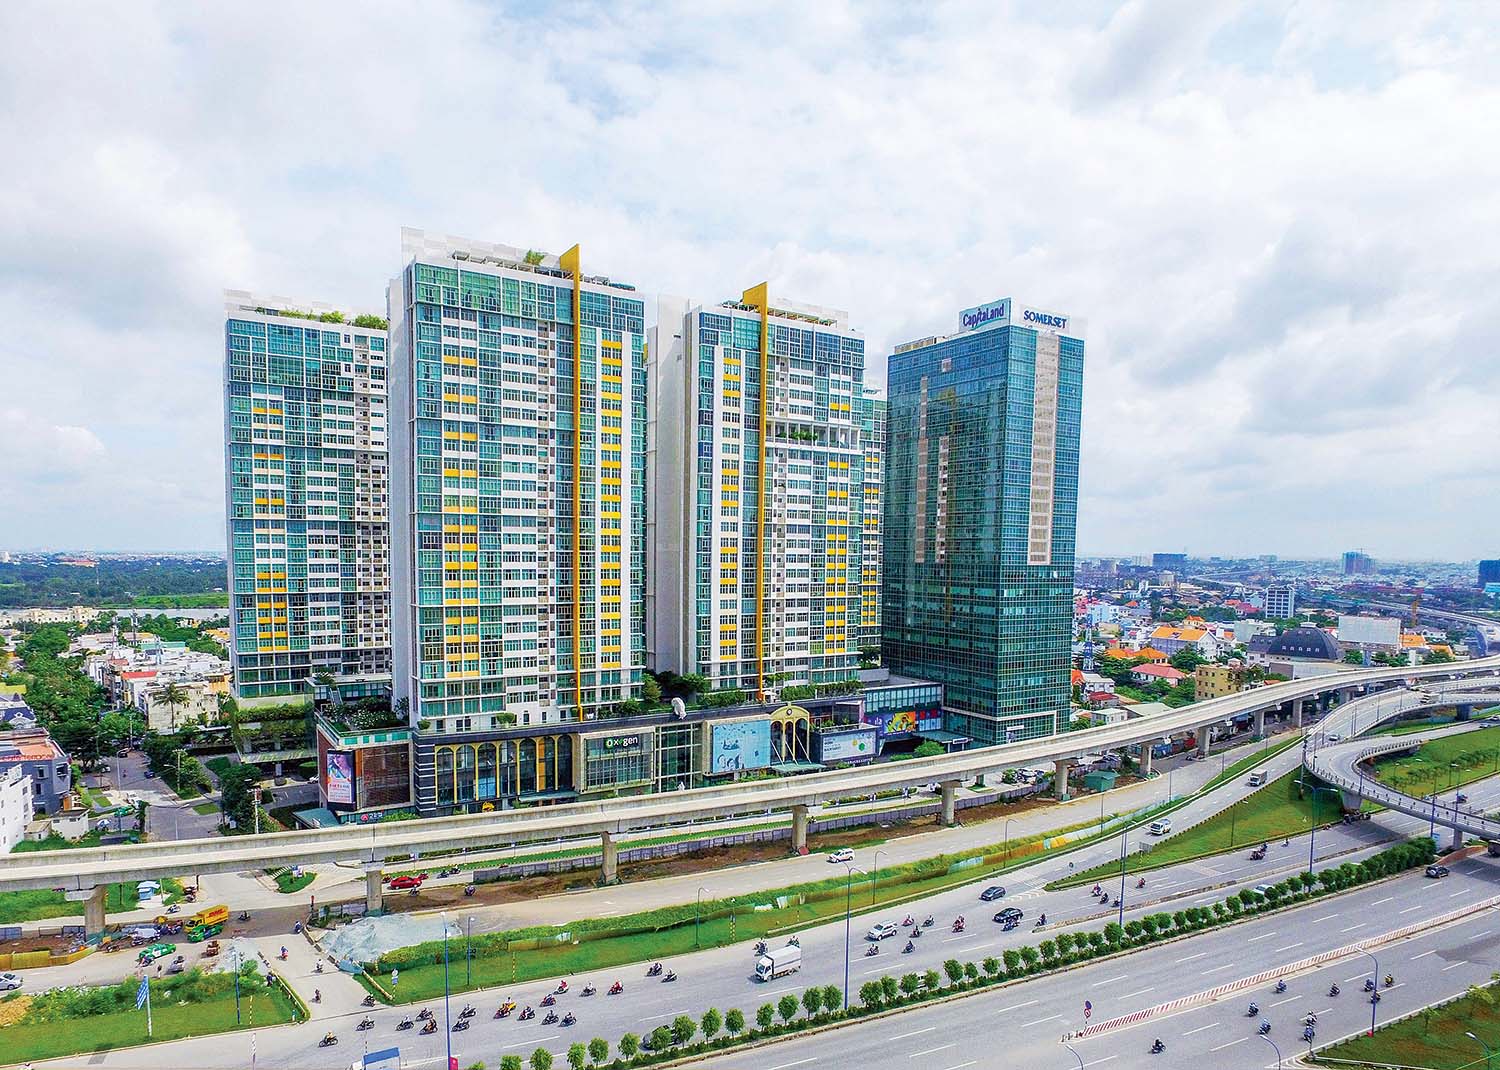 CapitaLand - tập đoàn bất động sản đa ngành đến từ Singapore - ngày càng mở rộng danh mục đầu tư và khẳng định thương hiệu tại Việt Nam 	